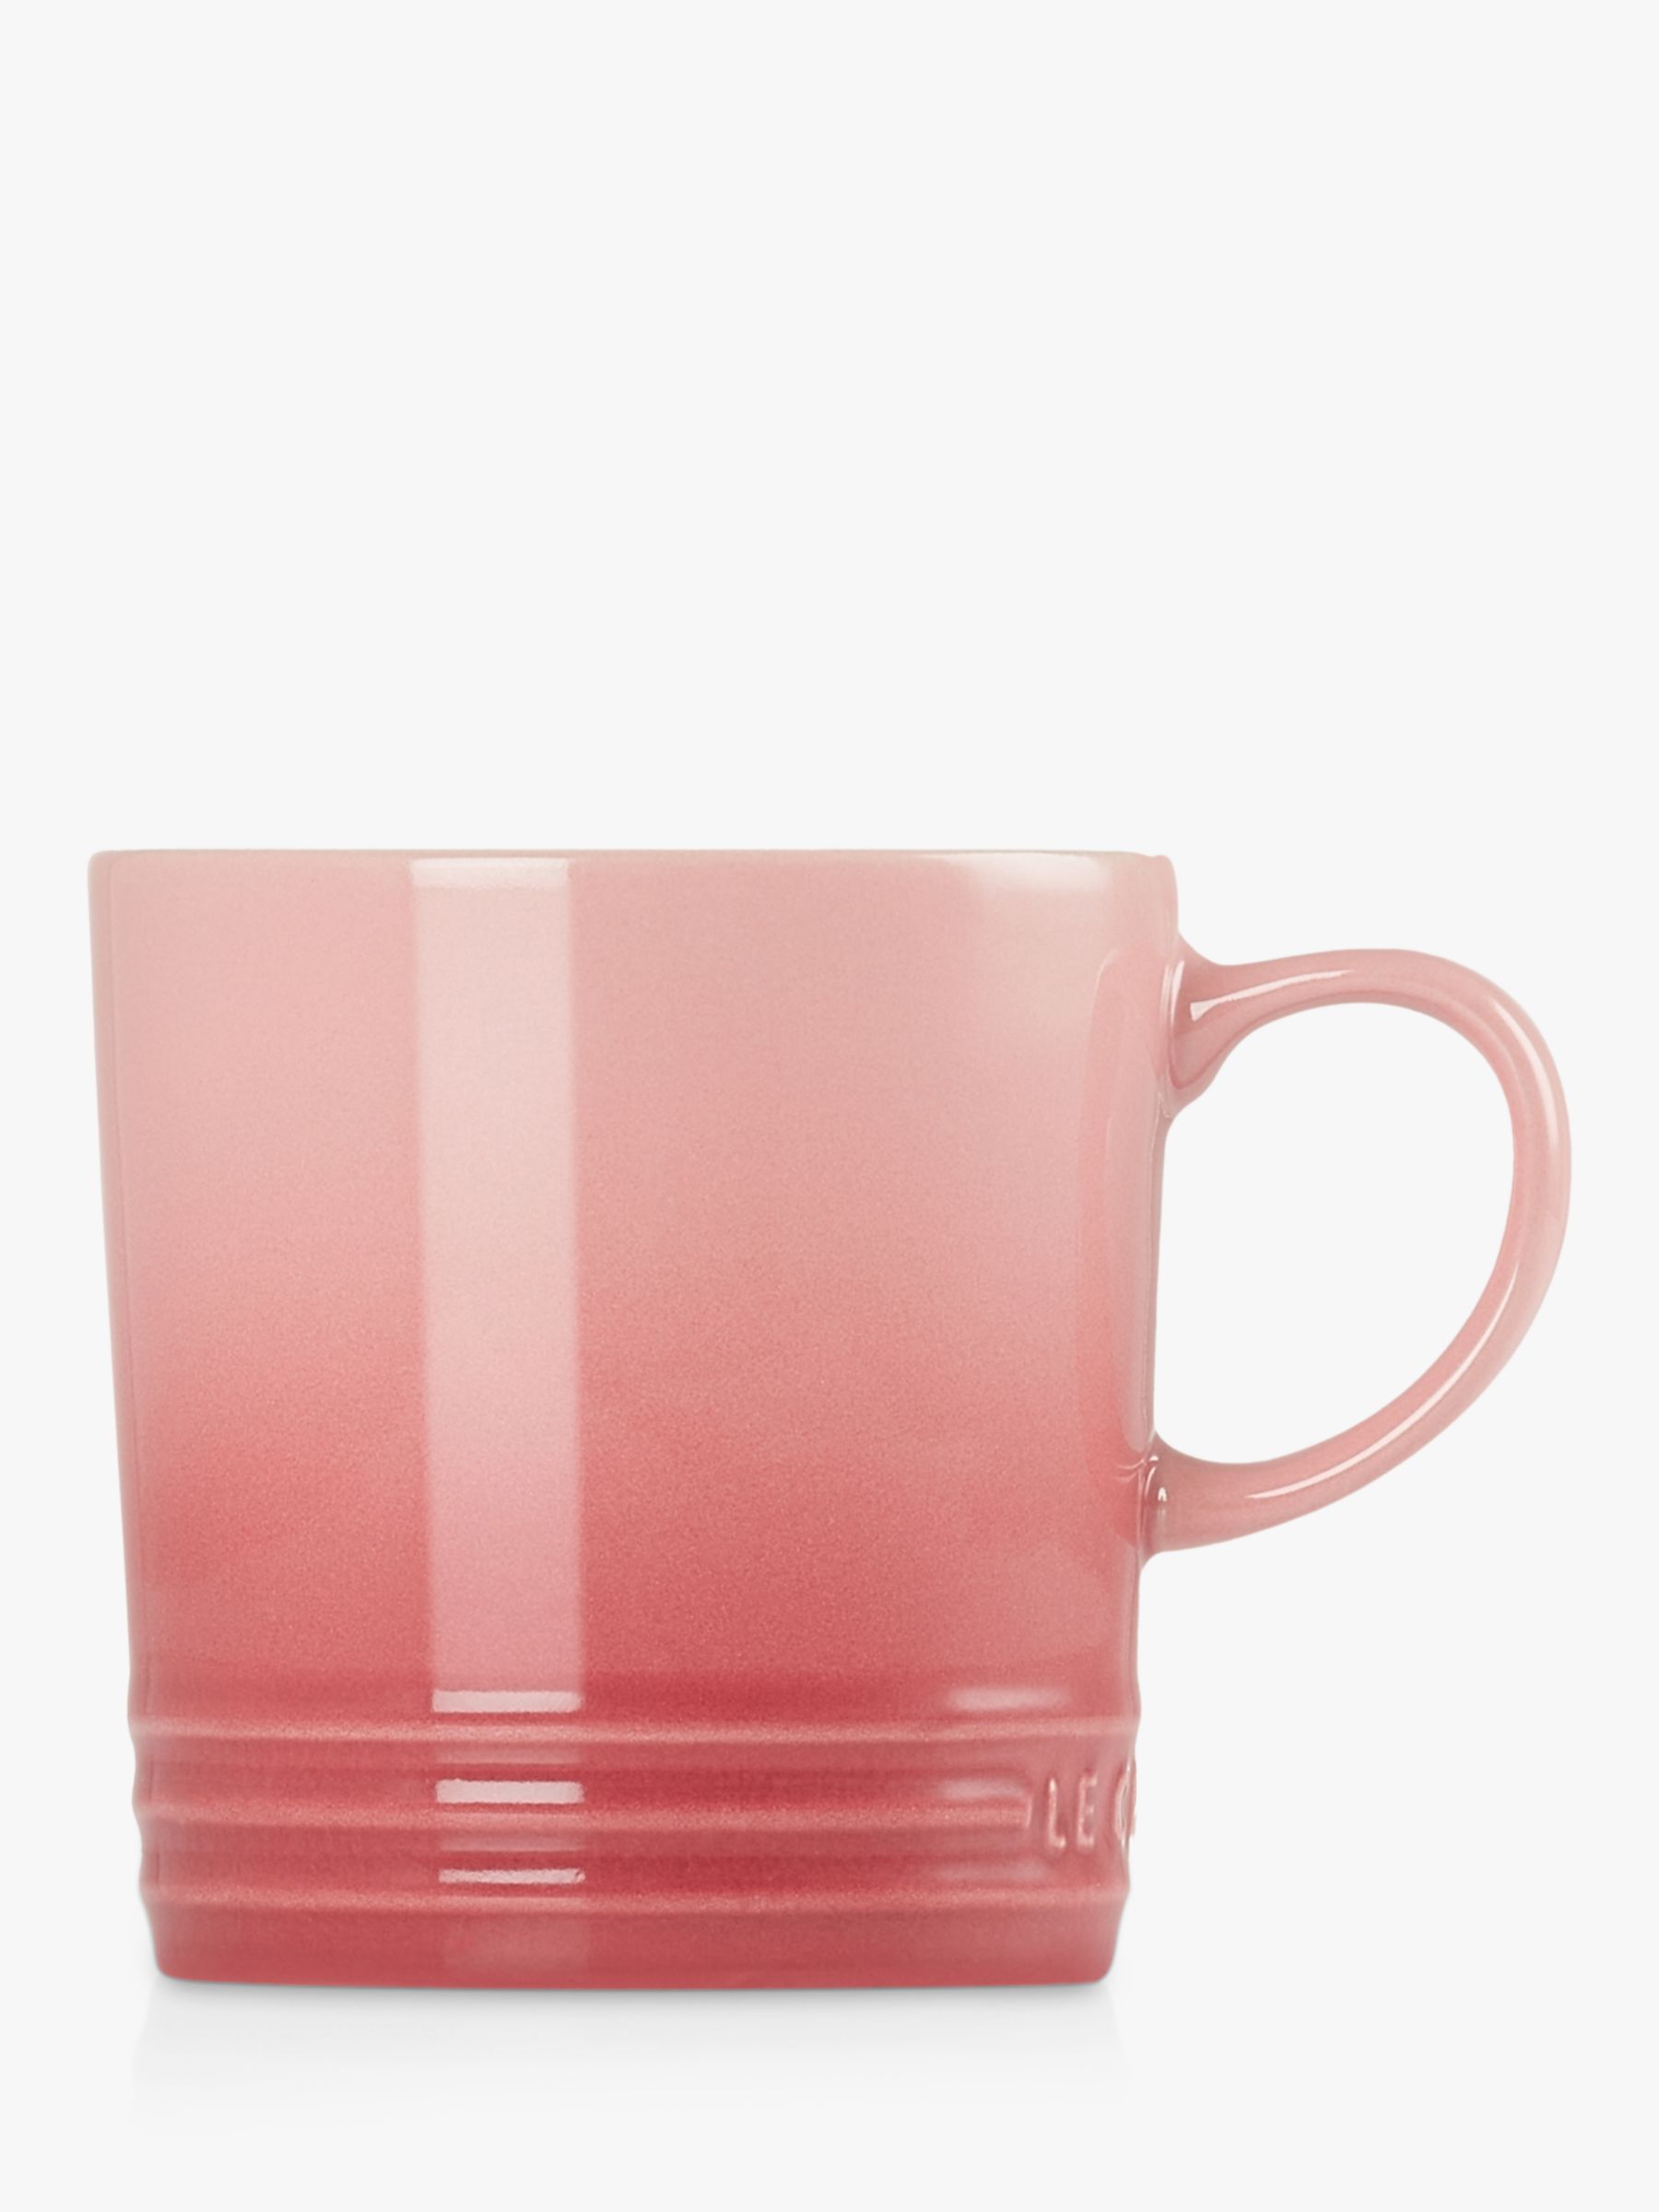 Le Creuset Stoneware Mug, 350ml, Rose Quartz